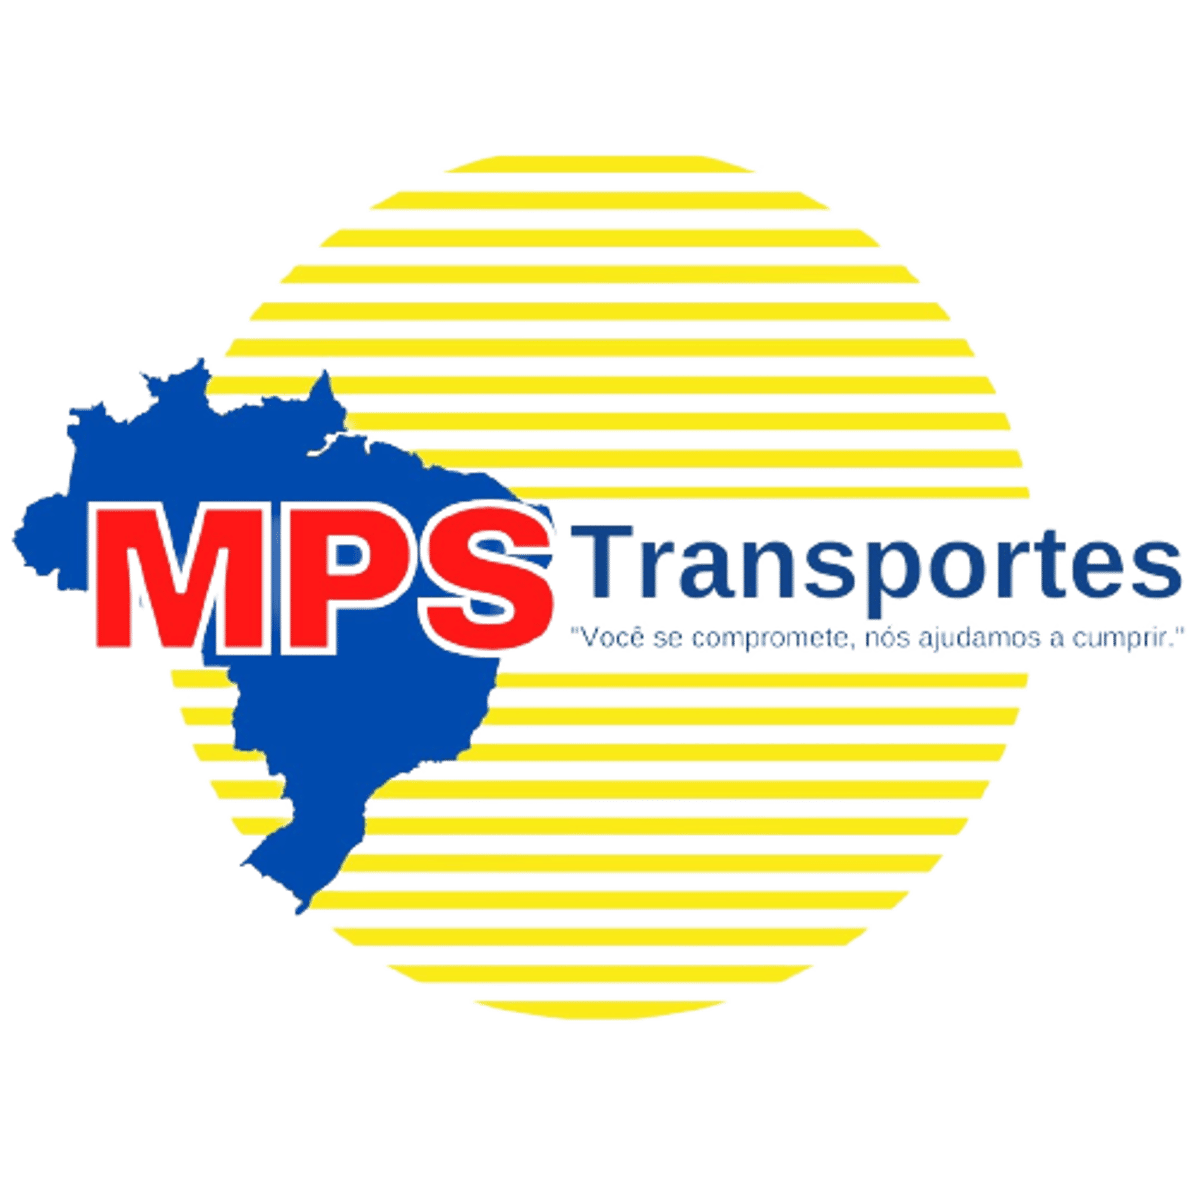 (c) Mpstransporte.com.br